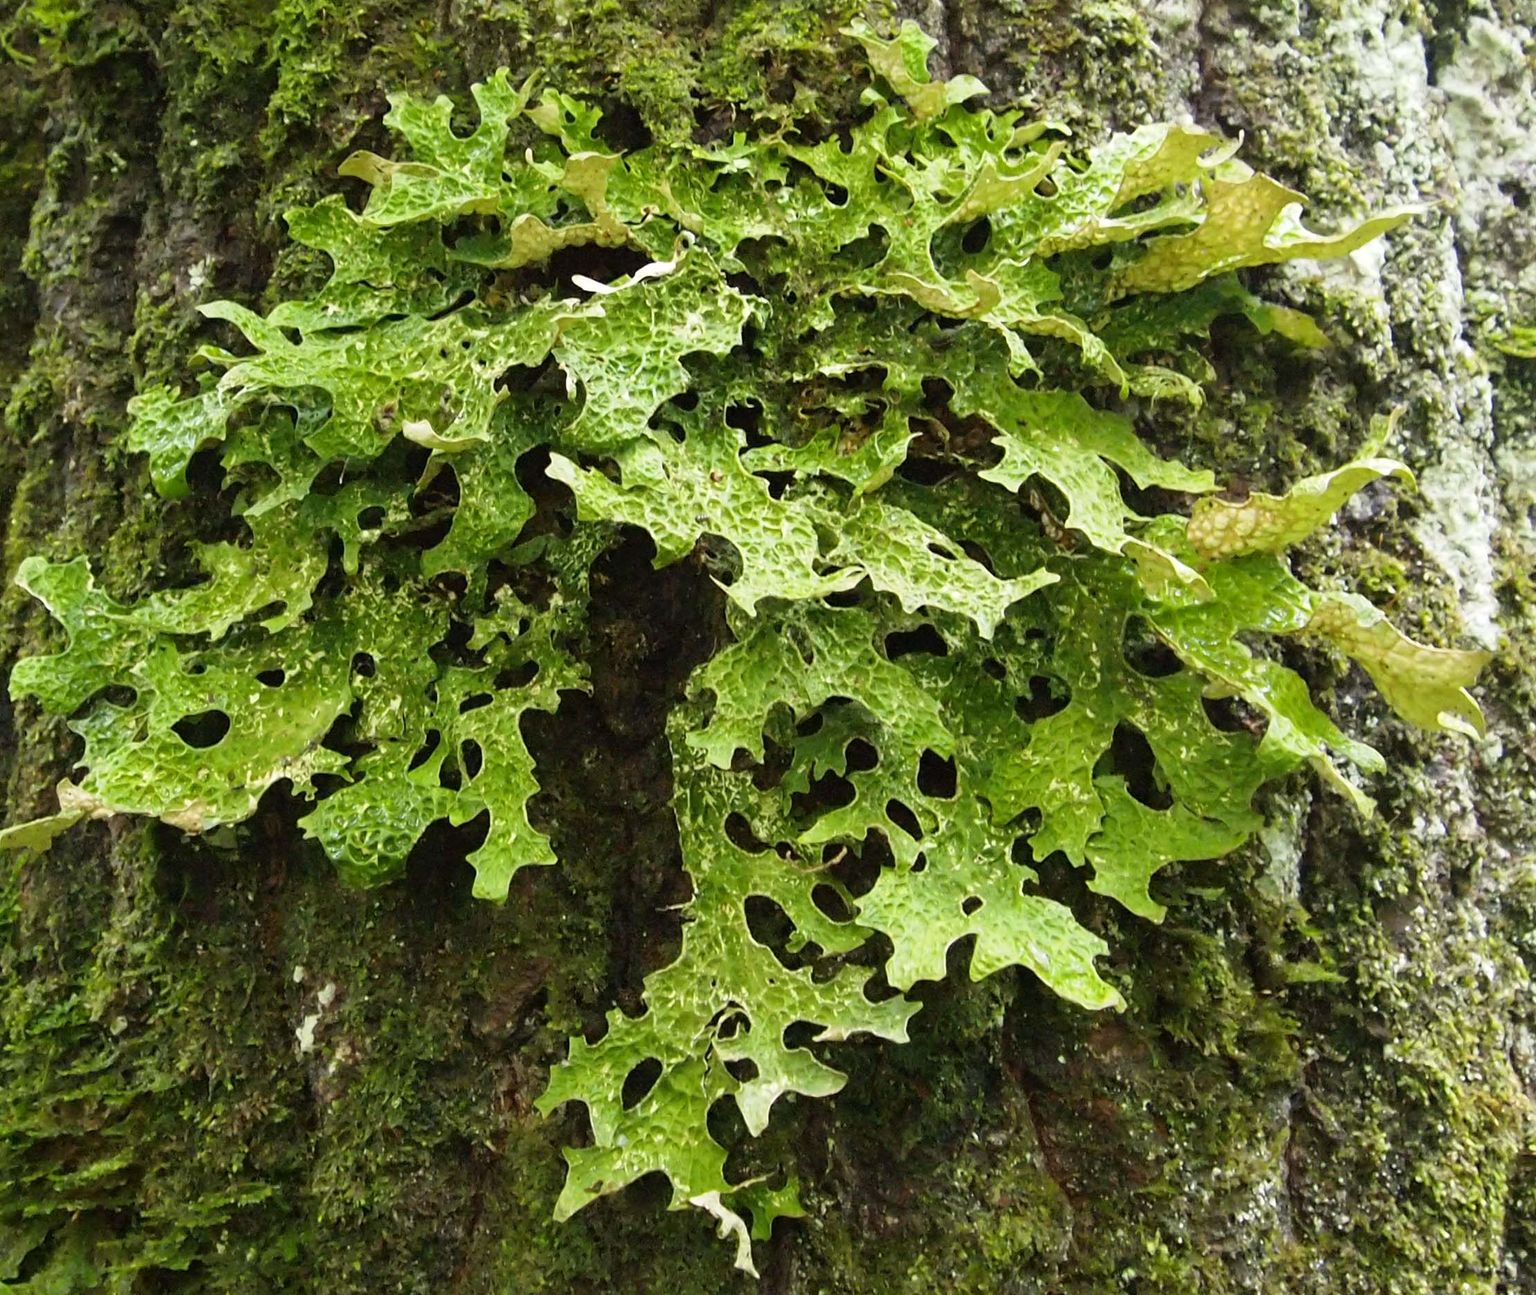 Harilik kopsusamblik (Lobaria pulmonaria) on säästliku metsamajanduse üks tunnusliike, keda ohustab vanade lehtpuude ja järjepidevate, maastikul ühendatud lehtpuistute kadumine.